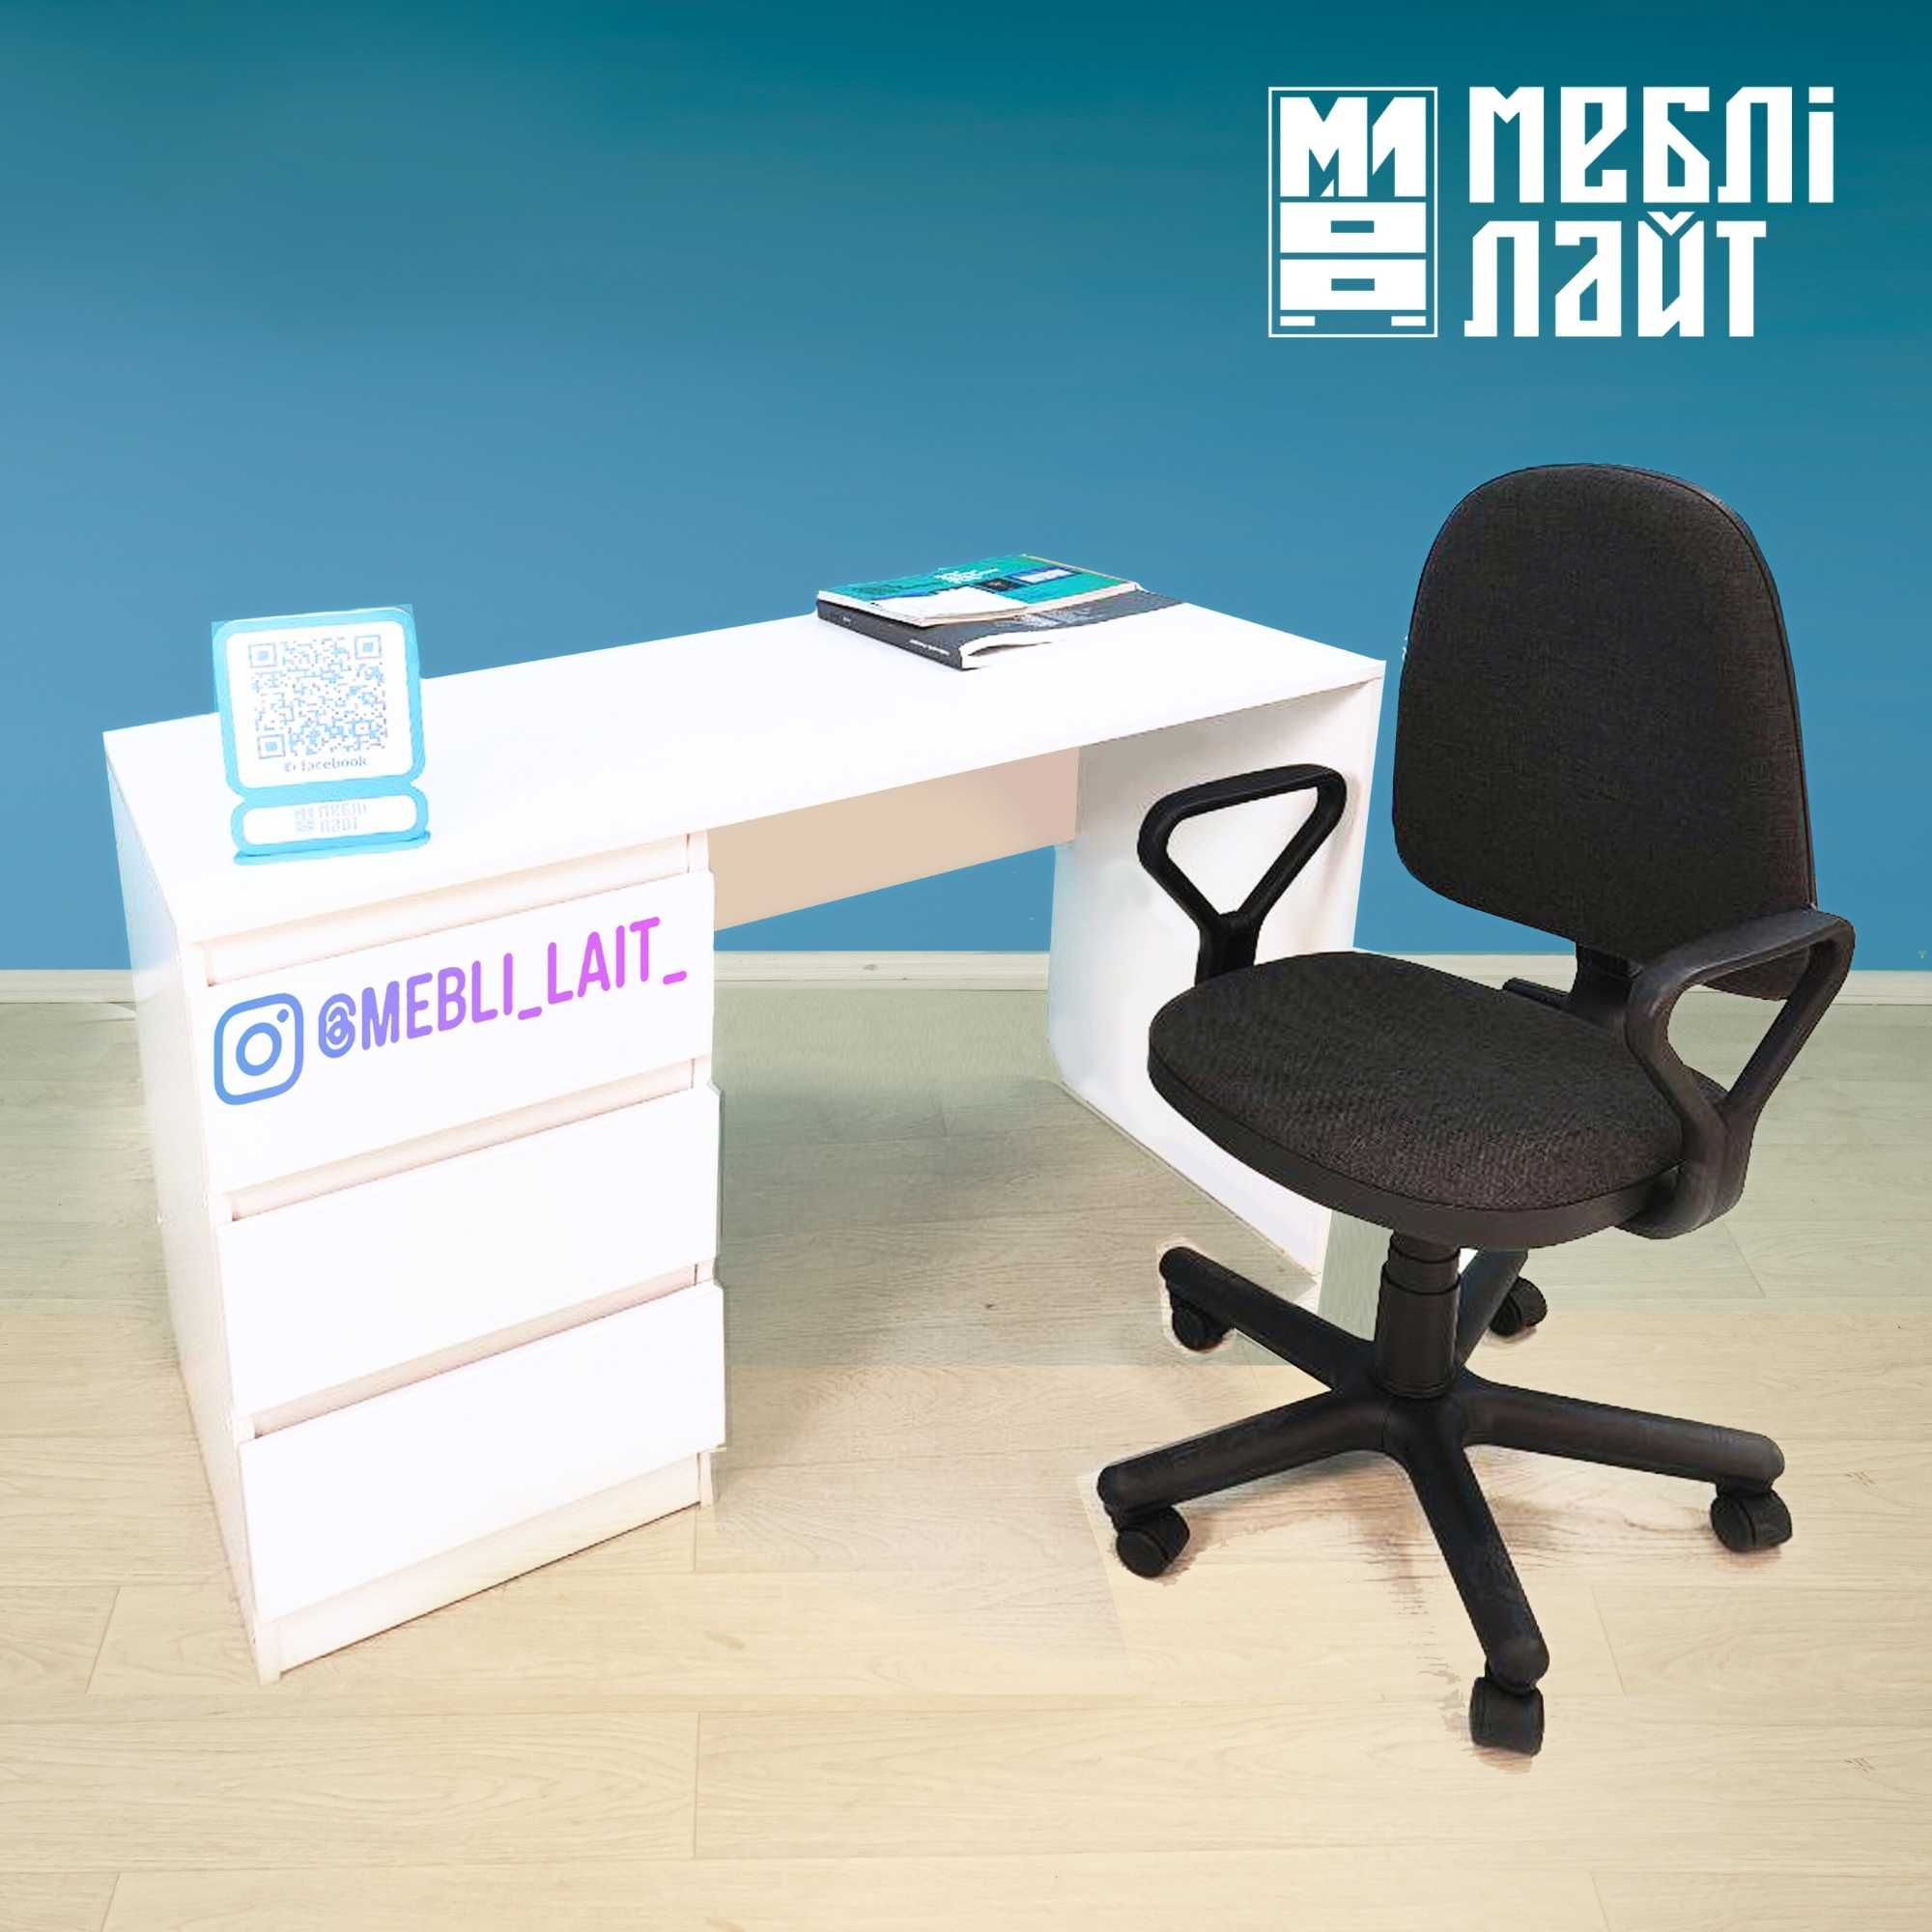 Стол письменный компьютерный белый - Стіл столик письмовий пк білий